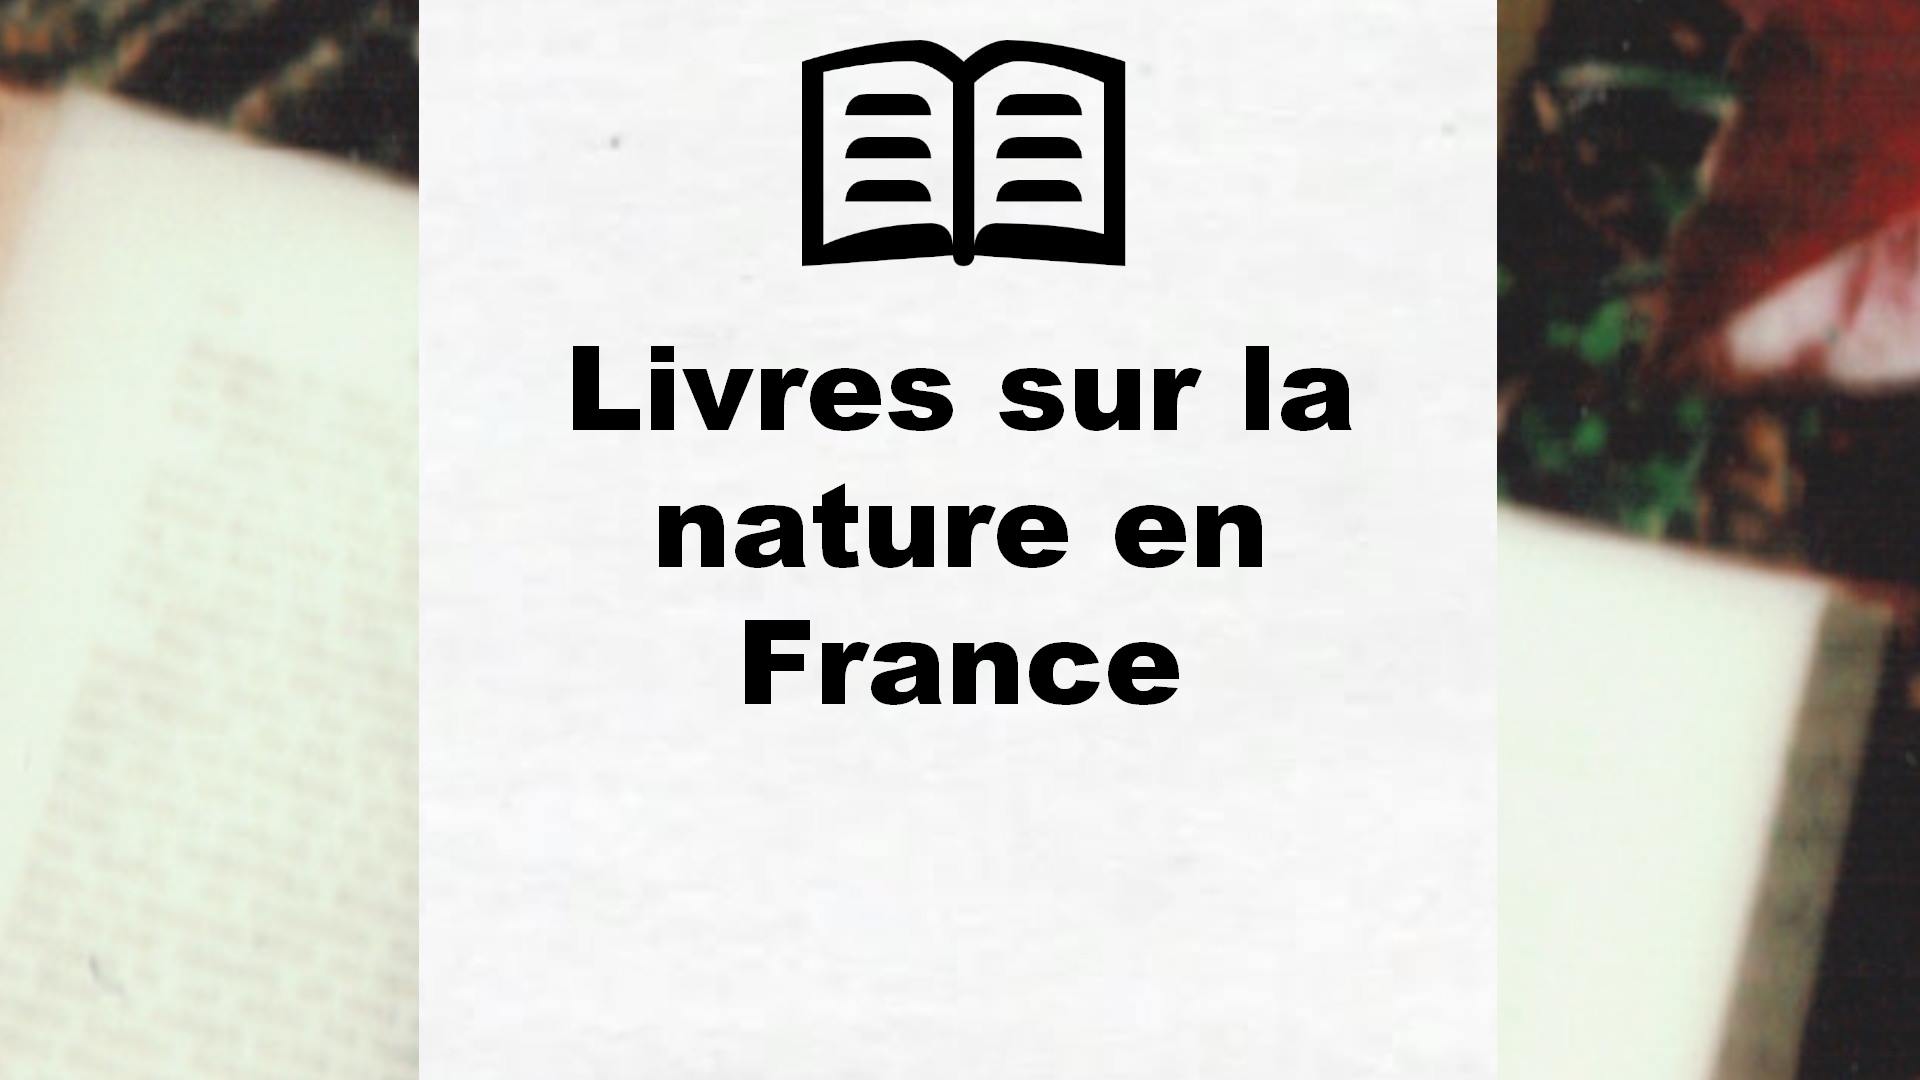 Livres sur la nature en France